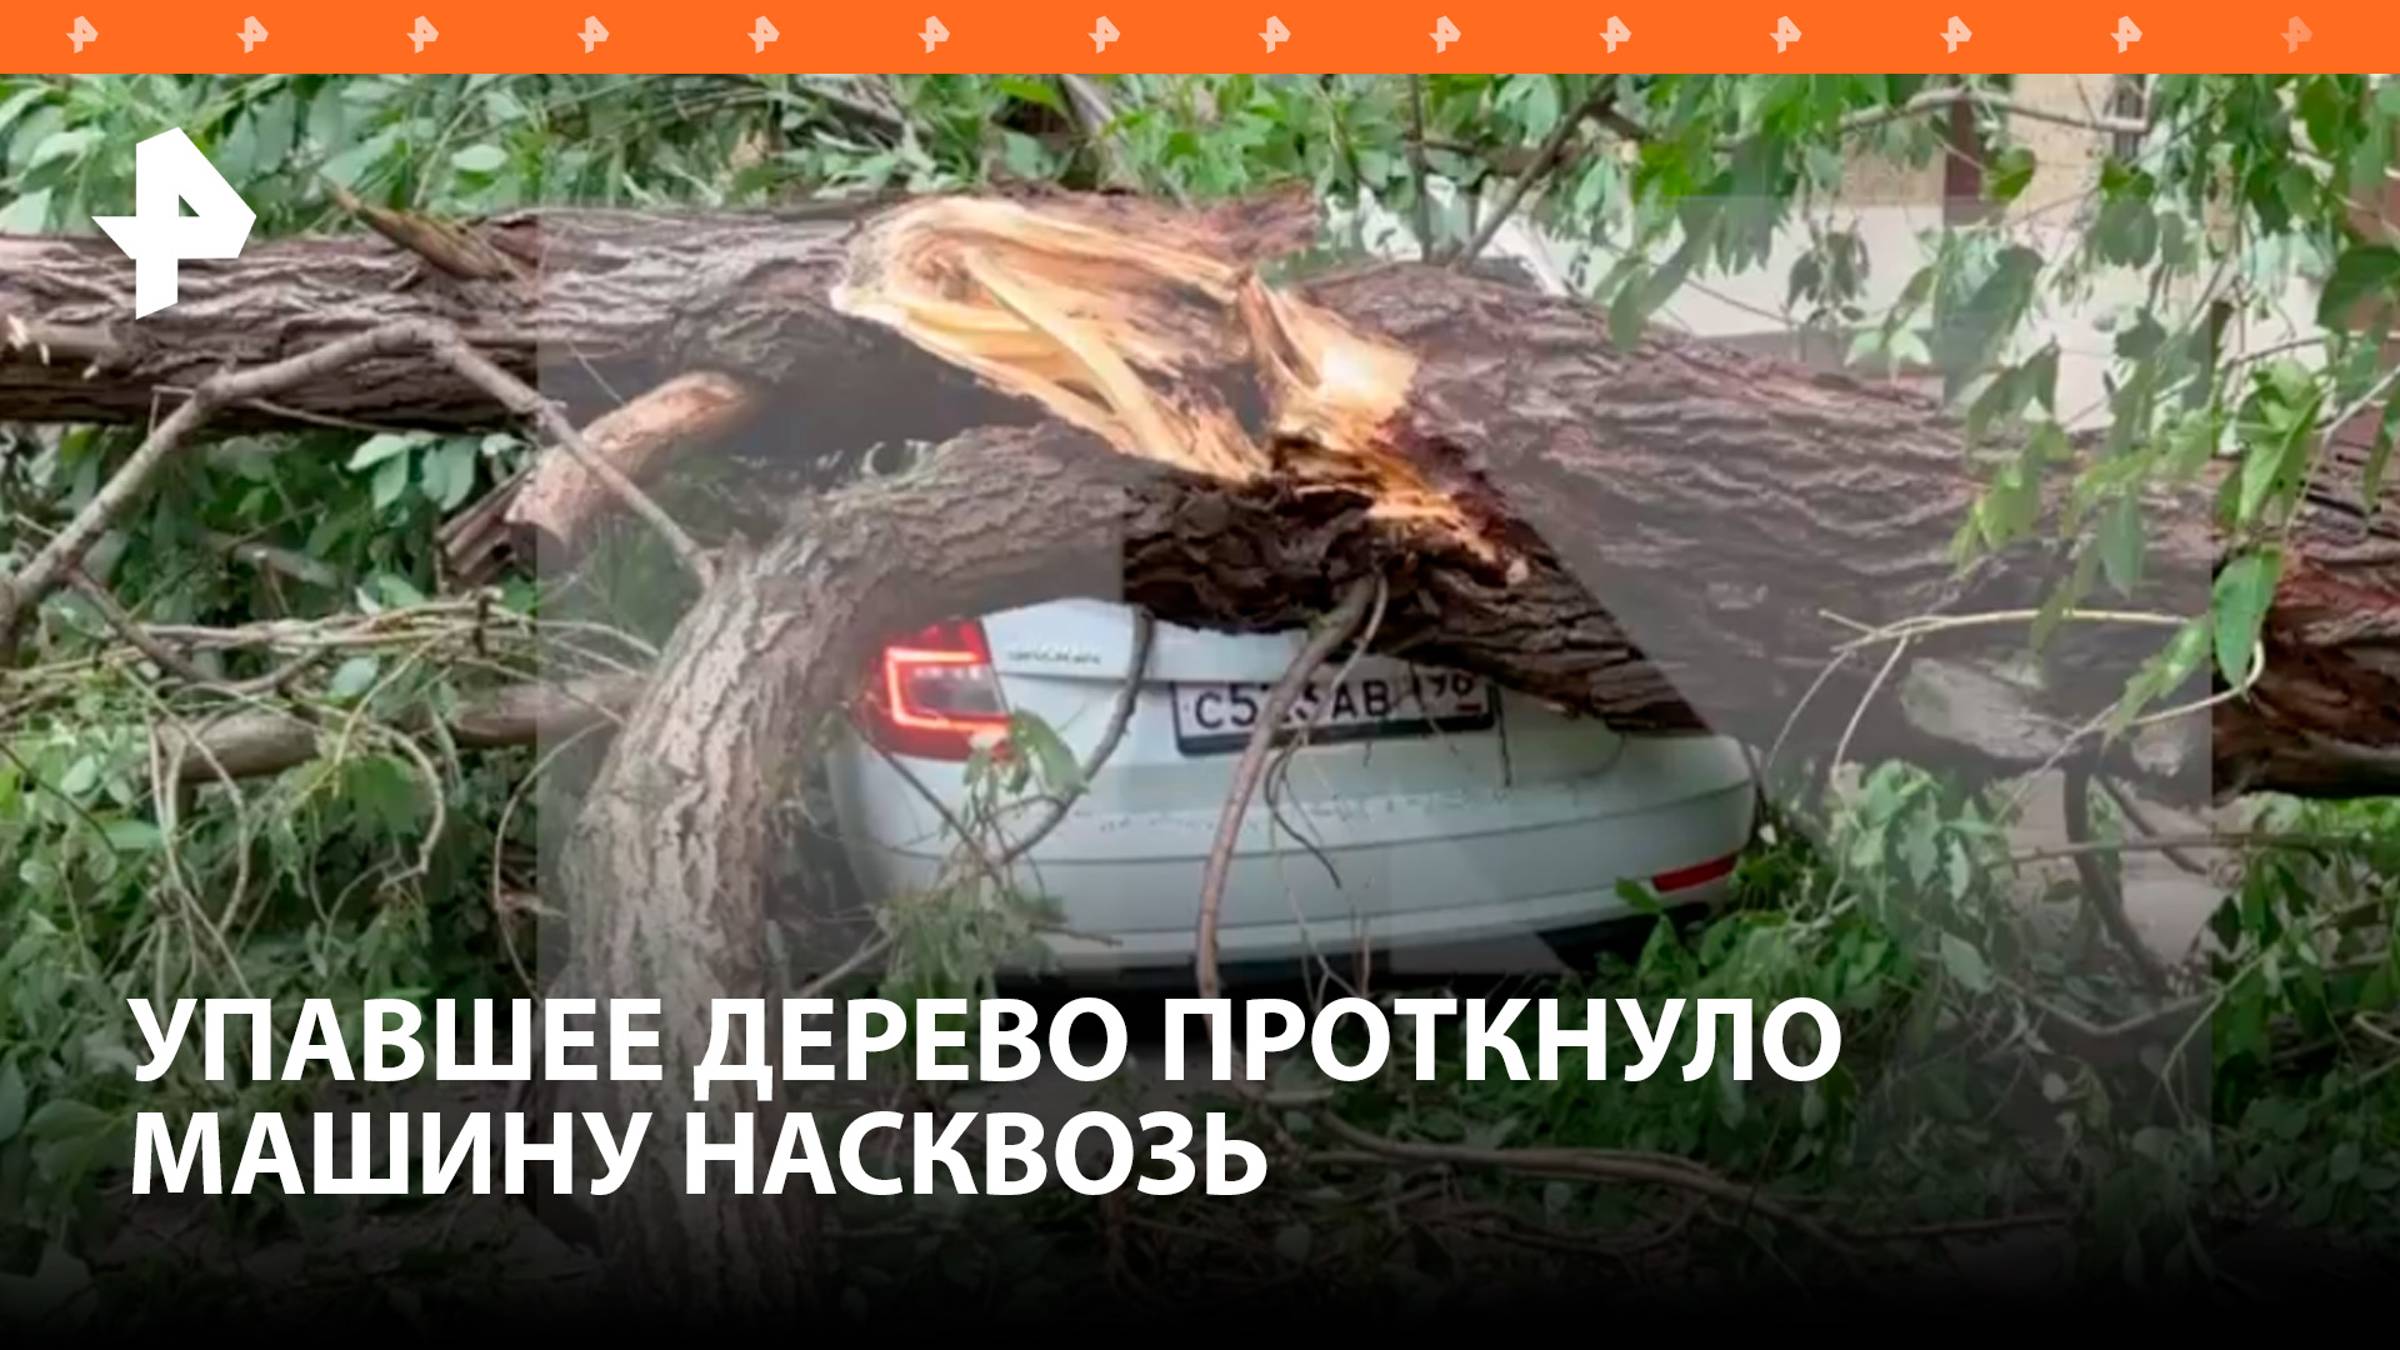 Дерево проткнуло машину, рухнув во время урагана в Санкт-Петербурге